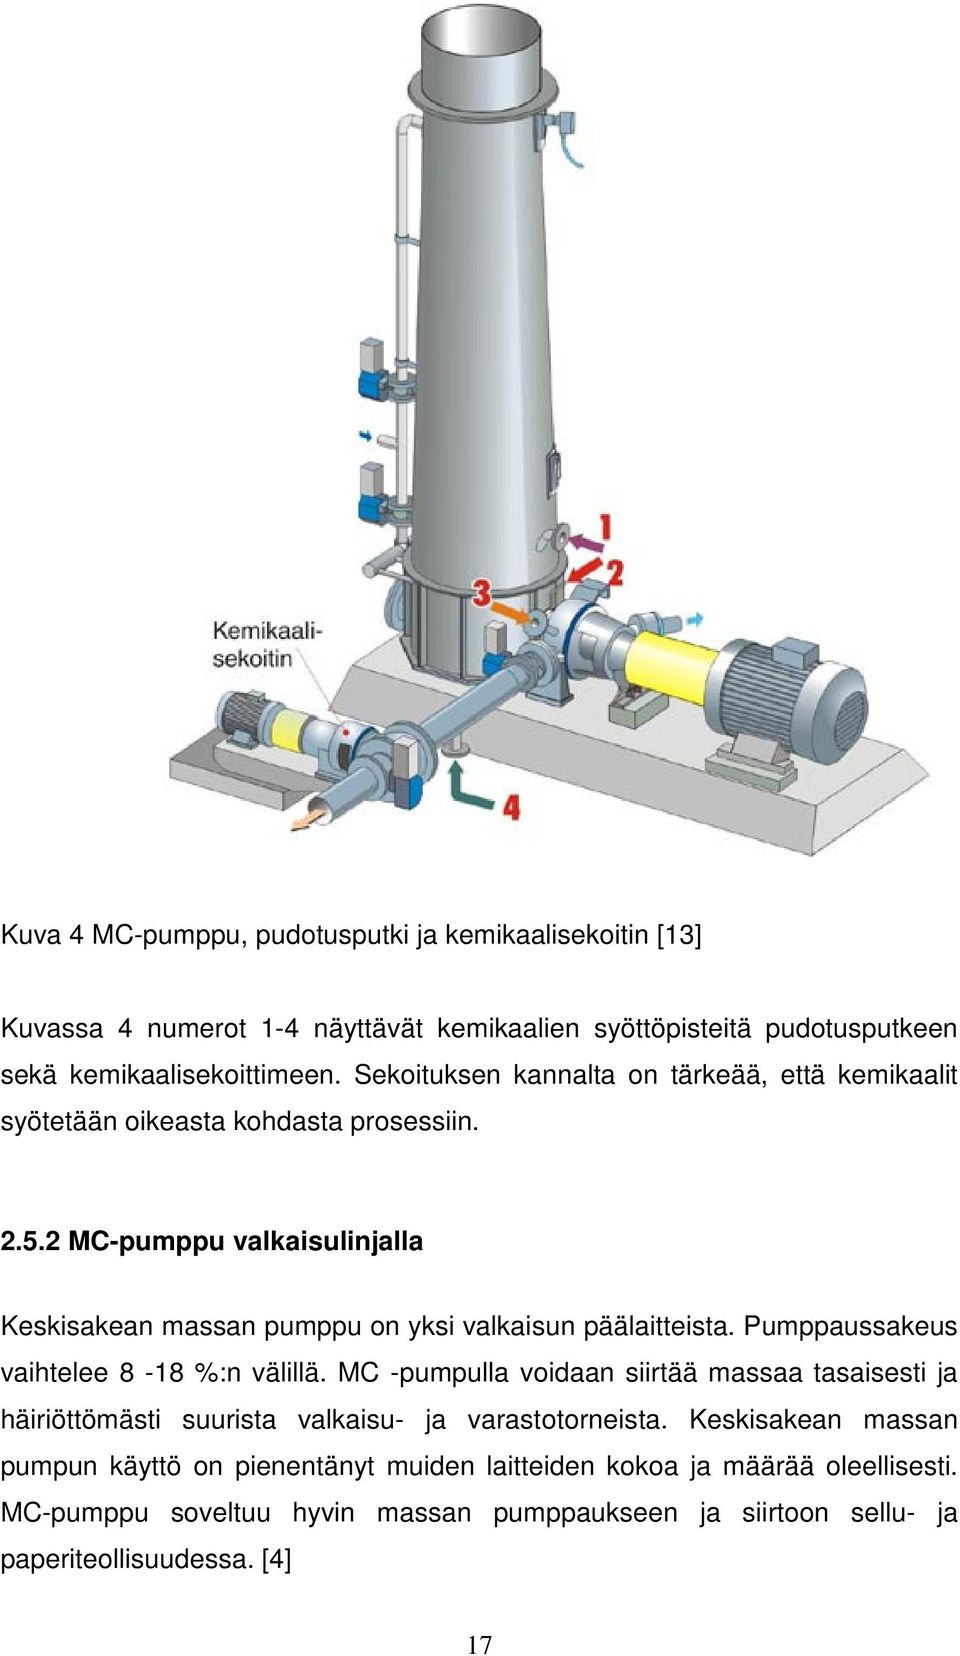 2 MC-pumppu valkaisulinjalla Keskisakean massan pumppu on yksi valkaisun päälaitteista. Pumppaussakeus vaihtelee 8-18 %:n välillä.